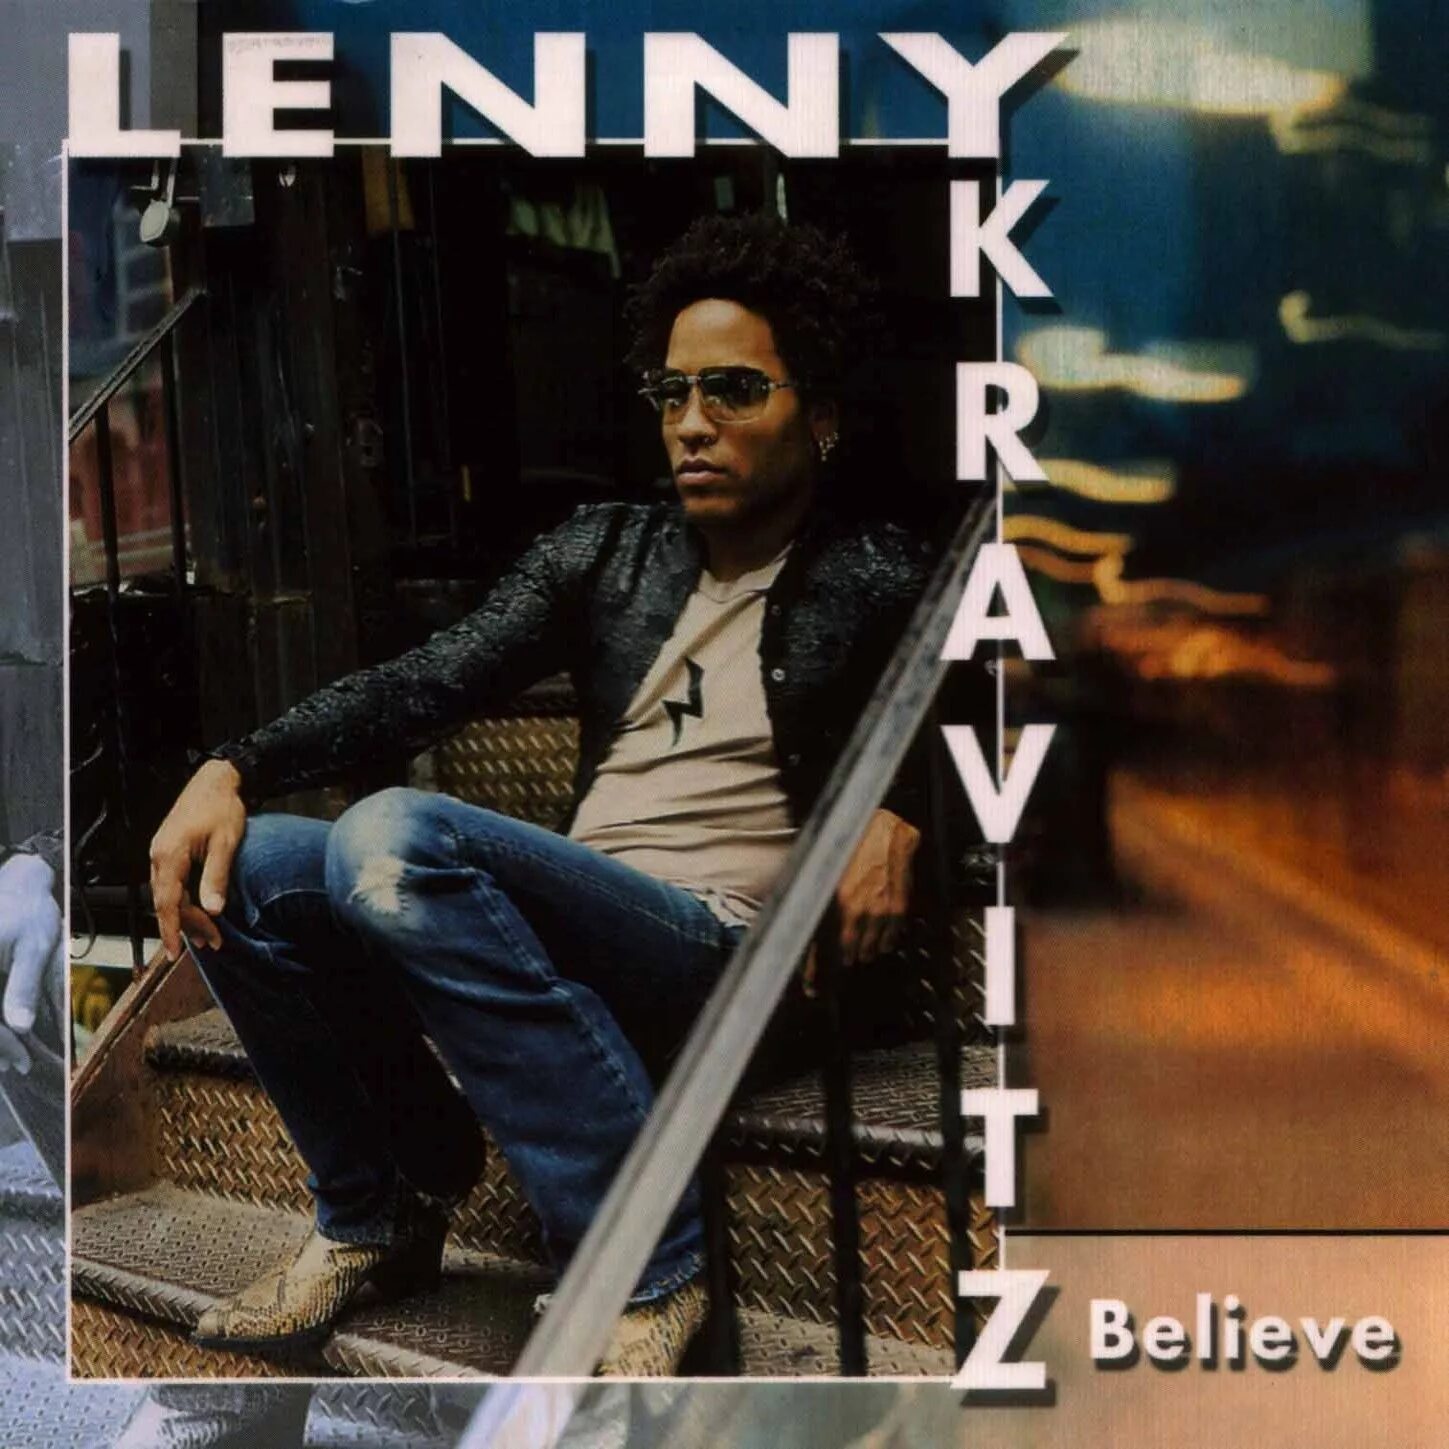 Ленни кравиц альбомы. Ленни Кравиц. Ленни Кравиц обложка. Greatest Hits Ленни Кравиц. Lenny Kravitz 5 обложка альбома CD.